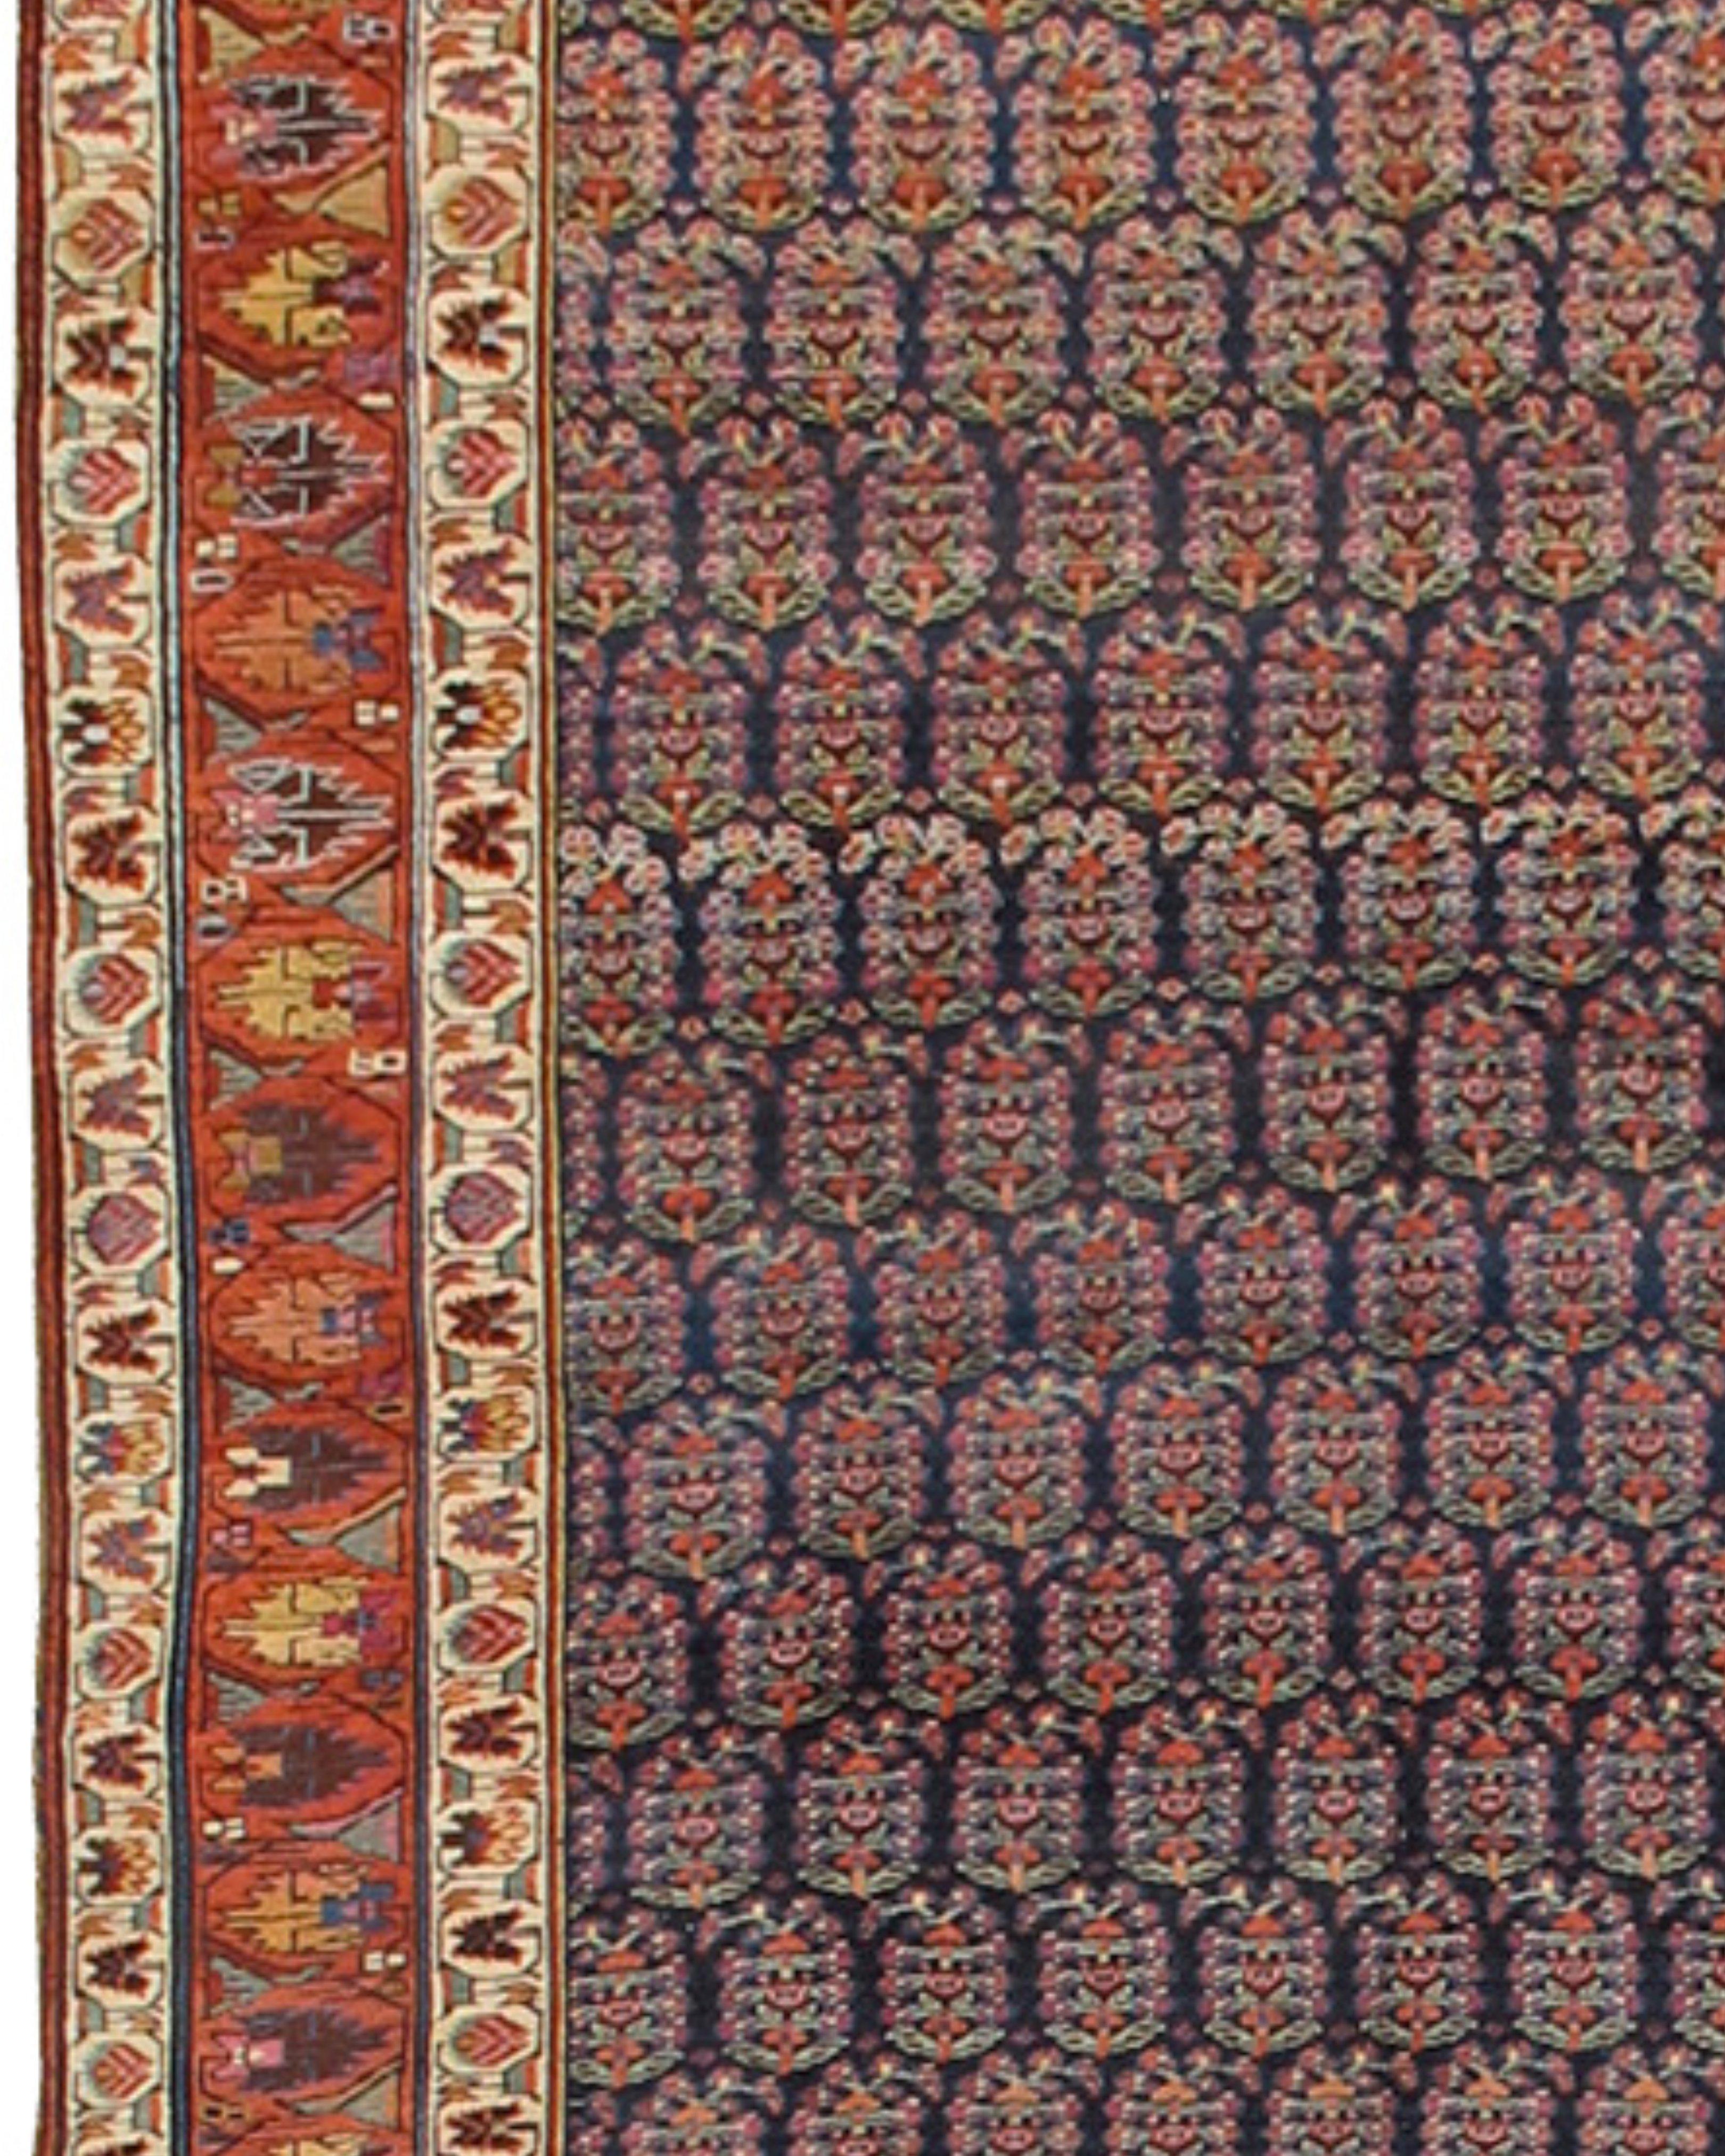 Tapis long ancien du nord-ouest de la Perse, 19e siècle

Tissé dans la région ethnique kurde du nord-ouest de la Perse, ce magnifique tapis de couloir présente des rangées de paisleys chatoyants ou boteh sur un fond bleu indigo modulé. Loin d'une